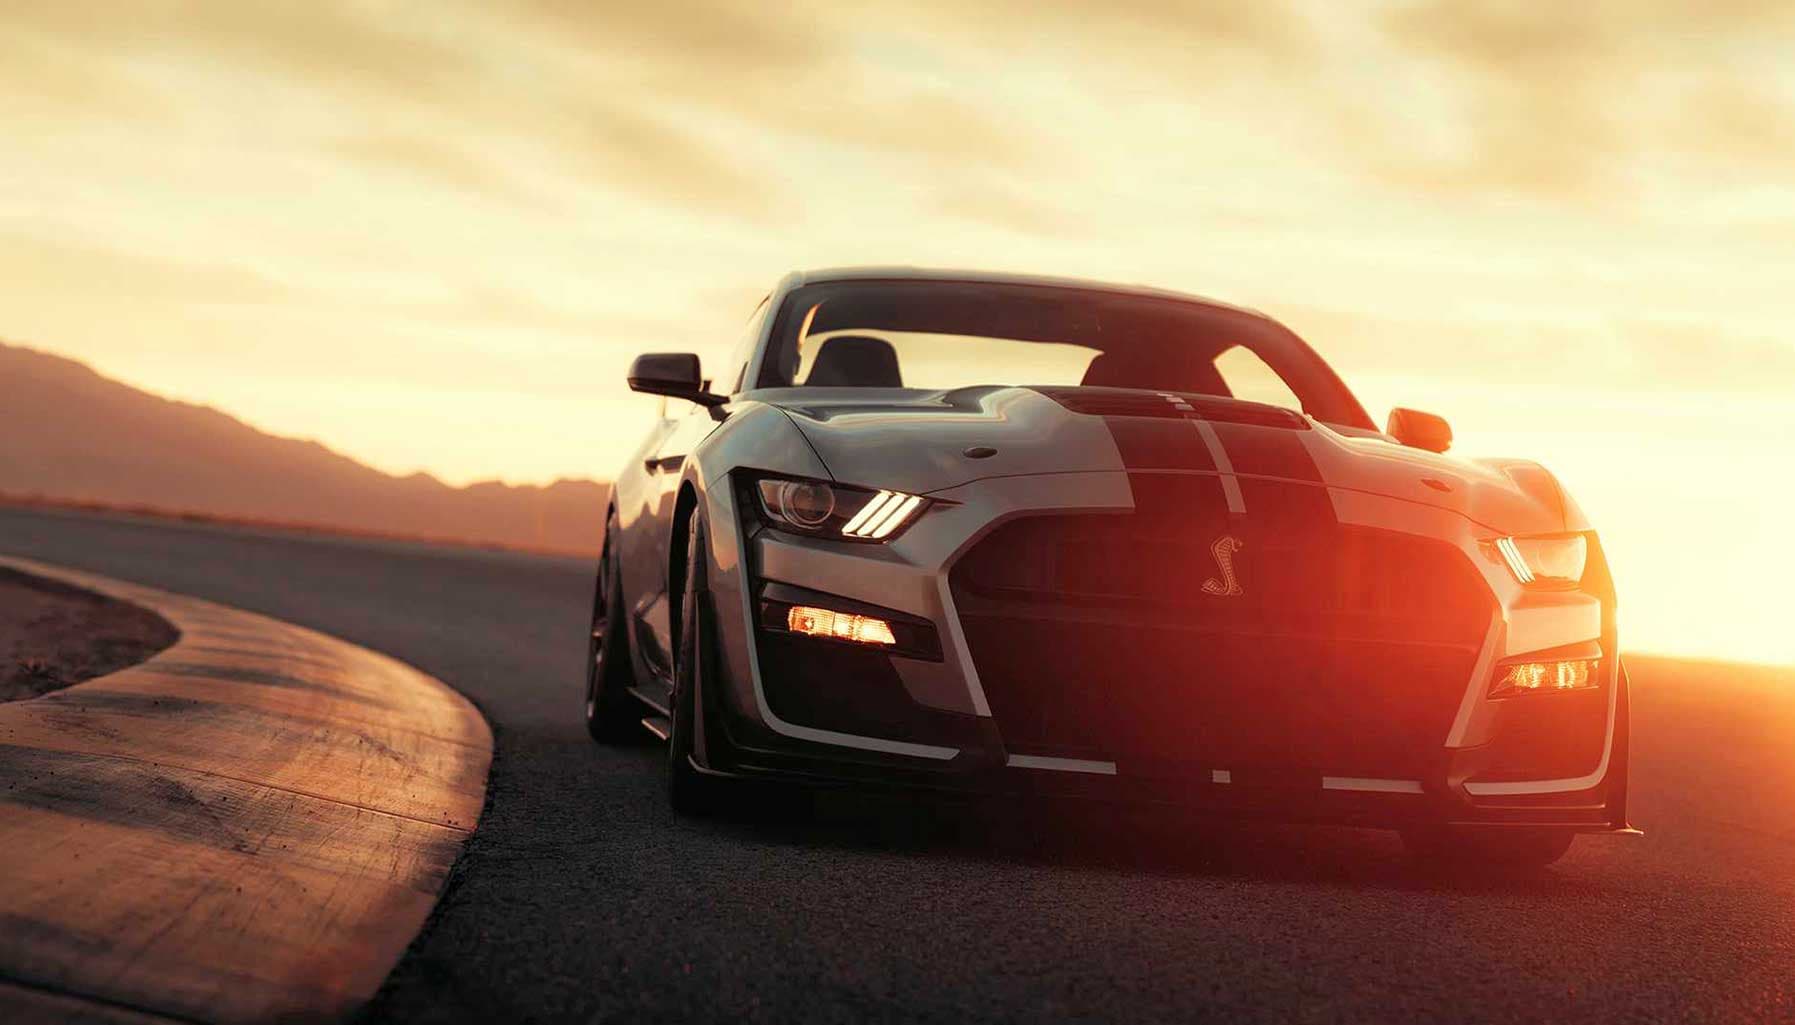 Mustang Shelby GT500 mới – chiếc Mustang mạnh mẽ bậc nhất